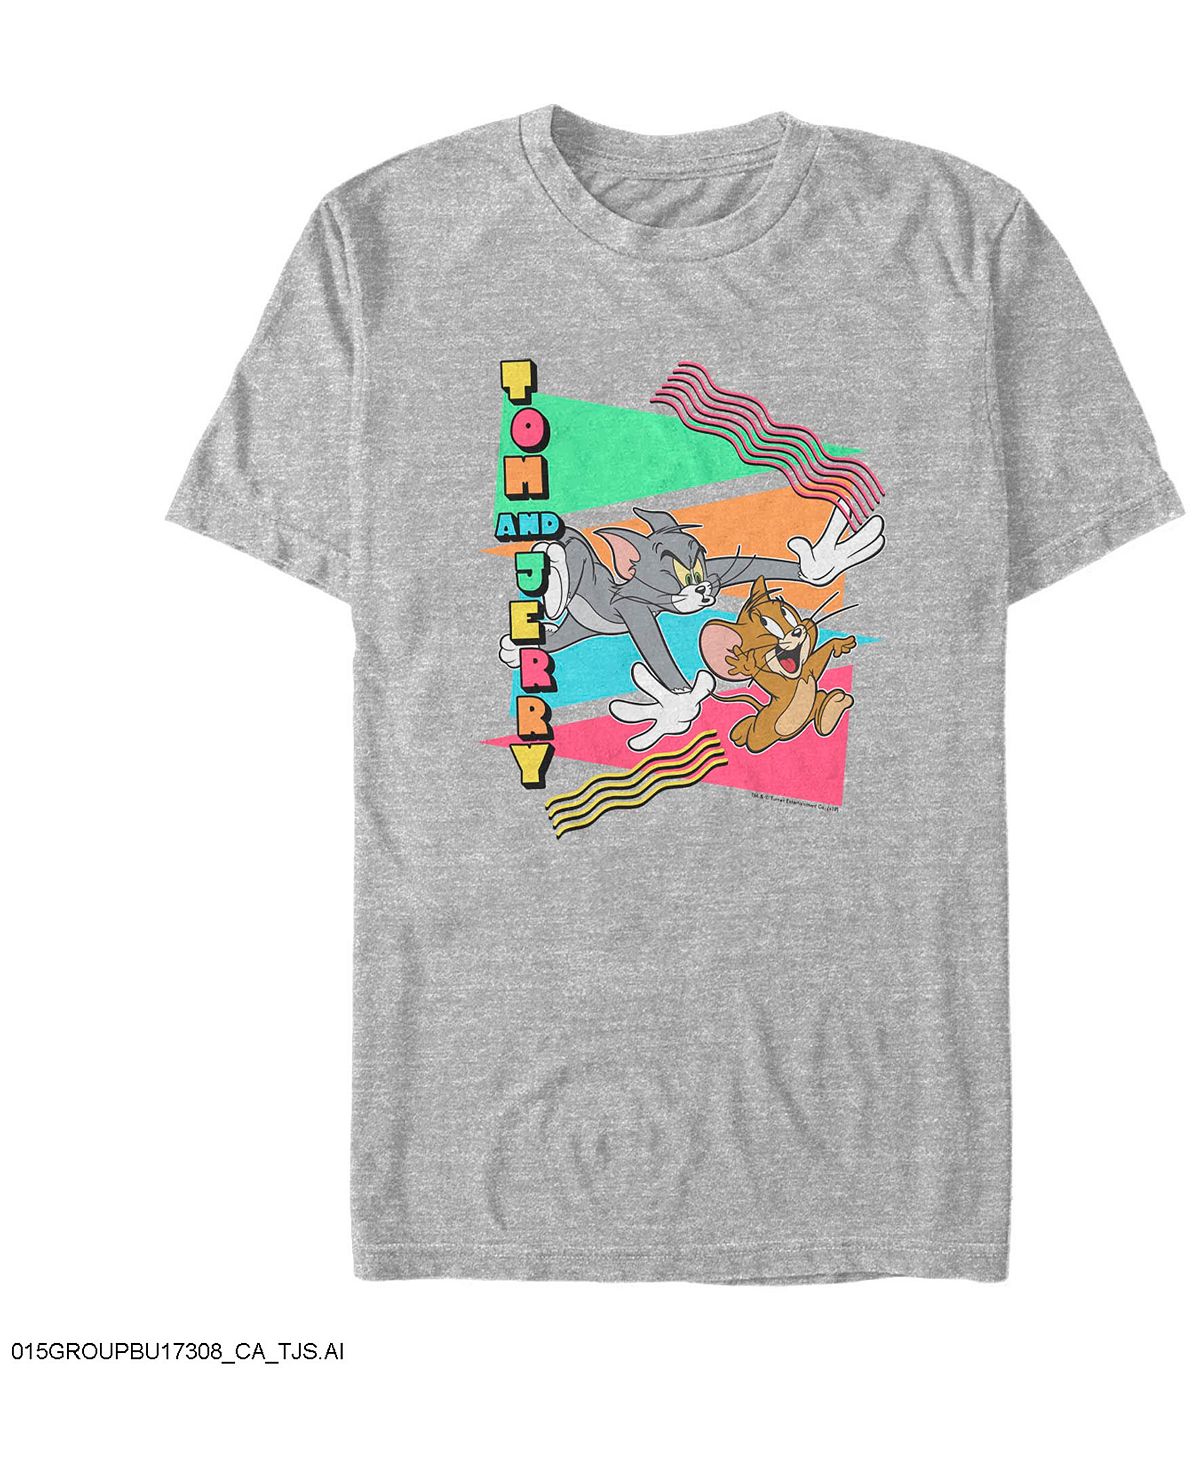 Мужская футболка с короткими рукавами tom jerry 90s triangles tom and jerry chase Fifth Sun, мульти